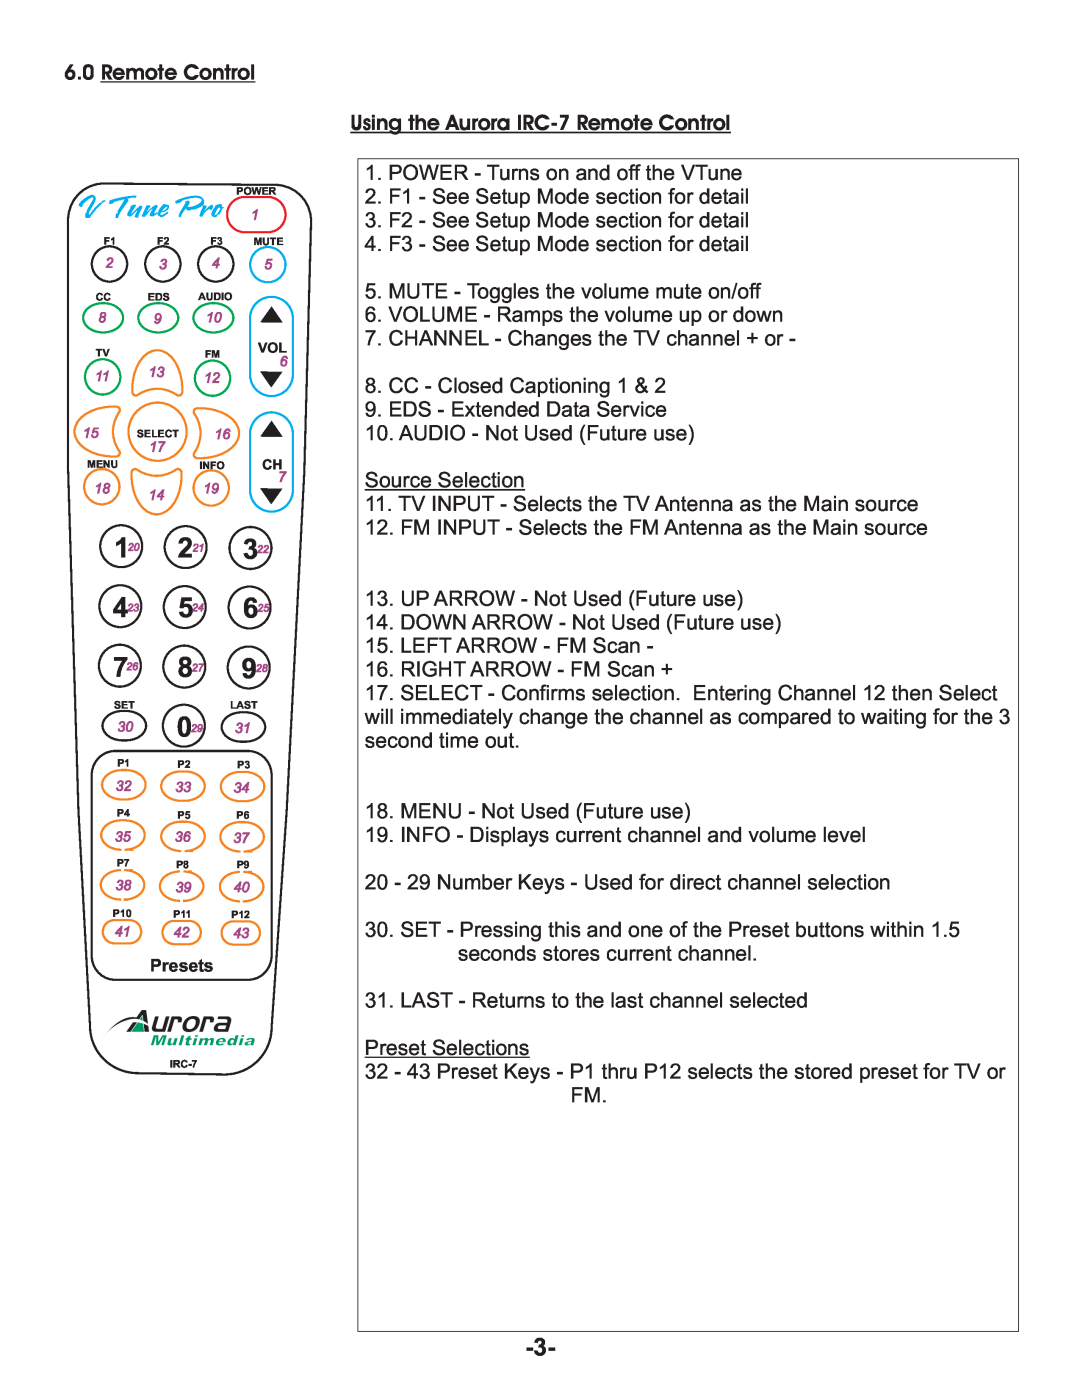 Aurora Multimedia TV/FM Tuner manual V Tune Pro, 6.0Remote Control, Using the Aurora IRC-7Remote Control 